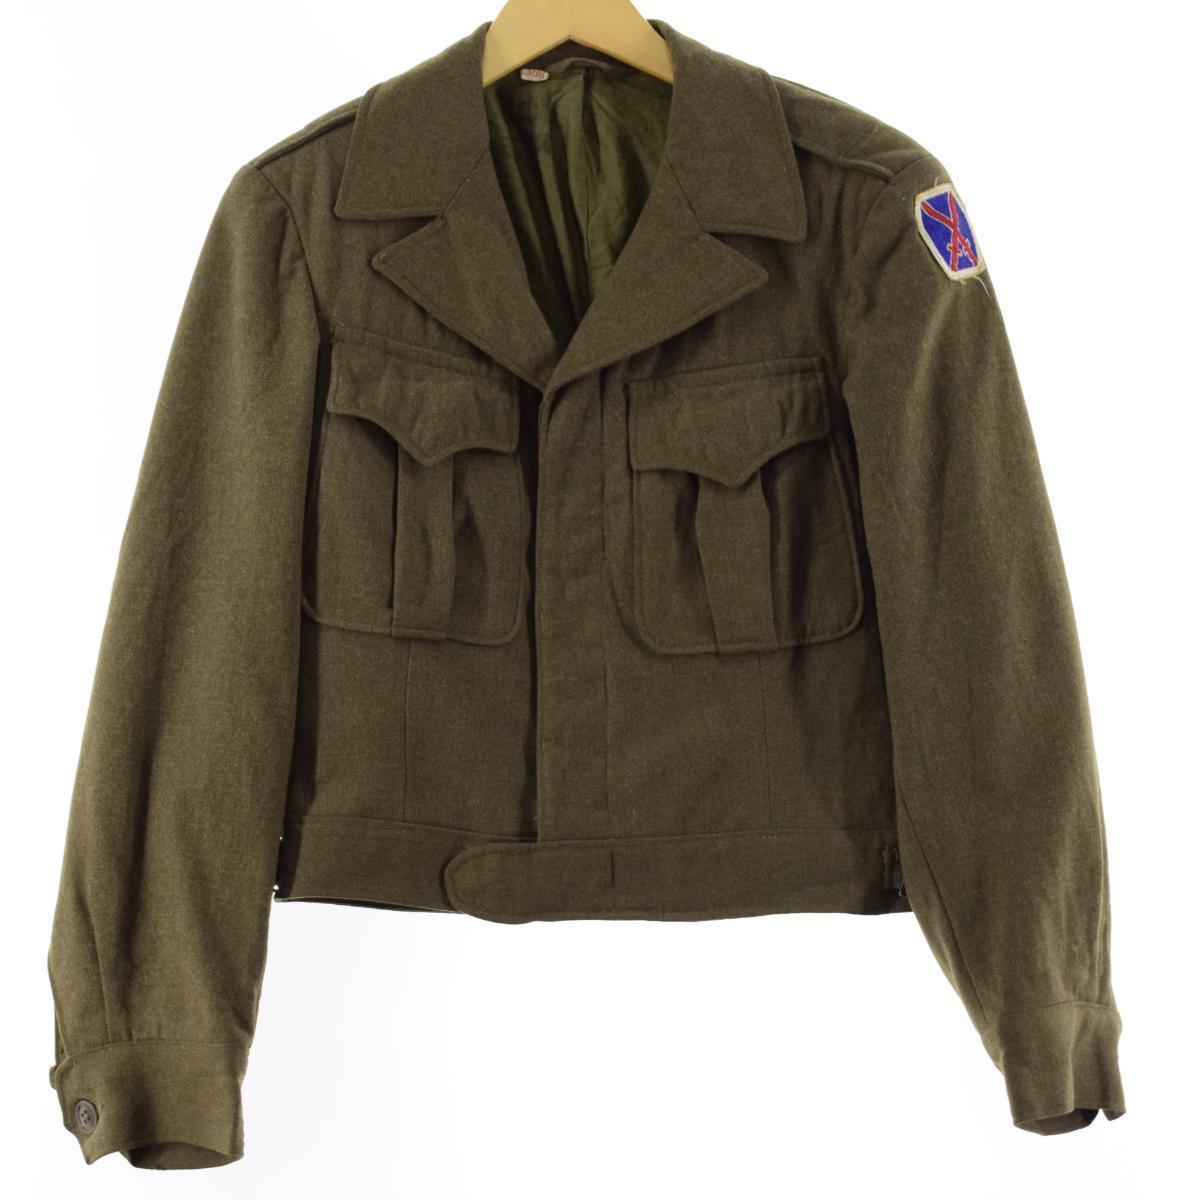 シリアルシール付 40年代 米軍実品 U.S.ARMY アイクジャケット